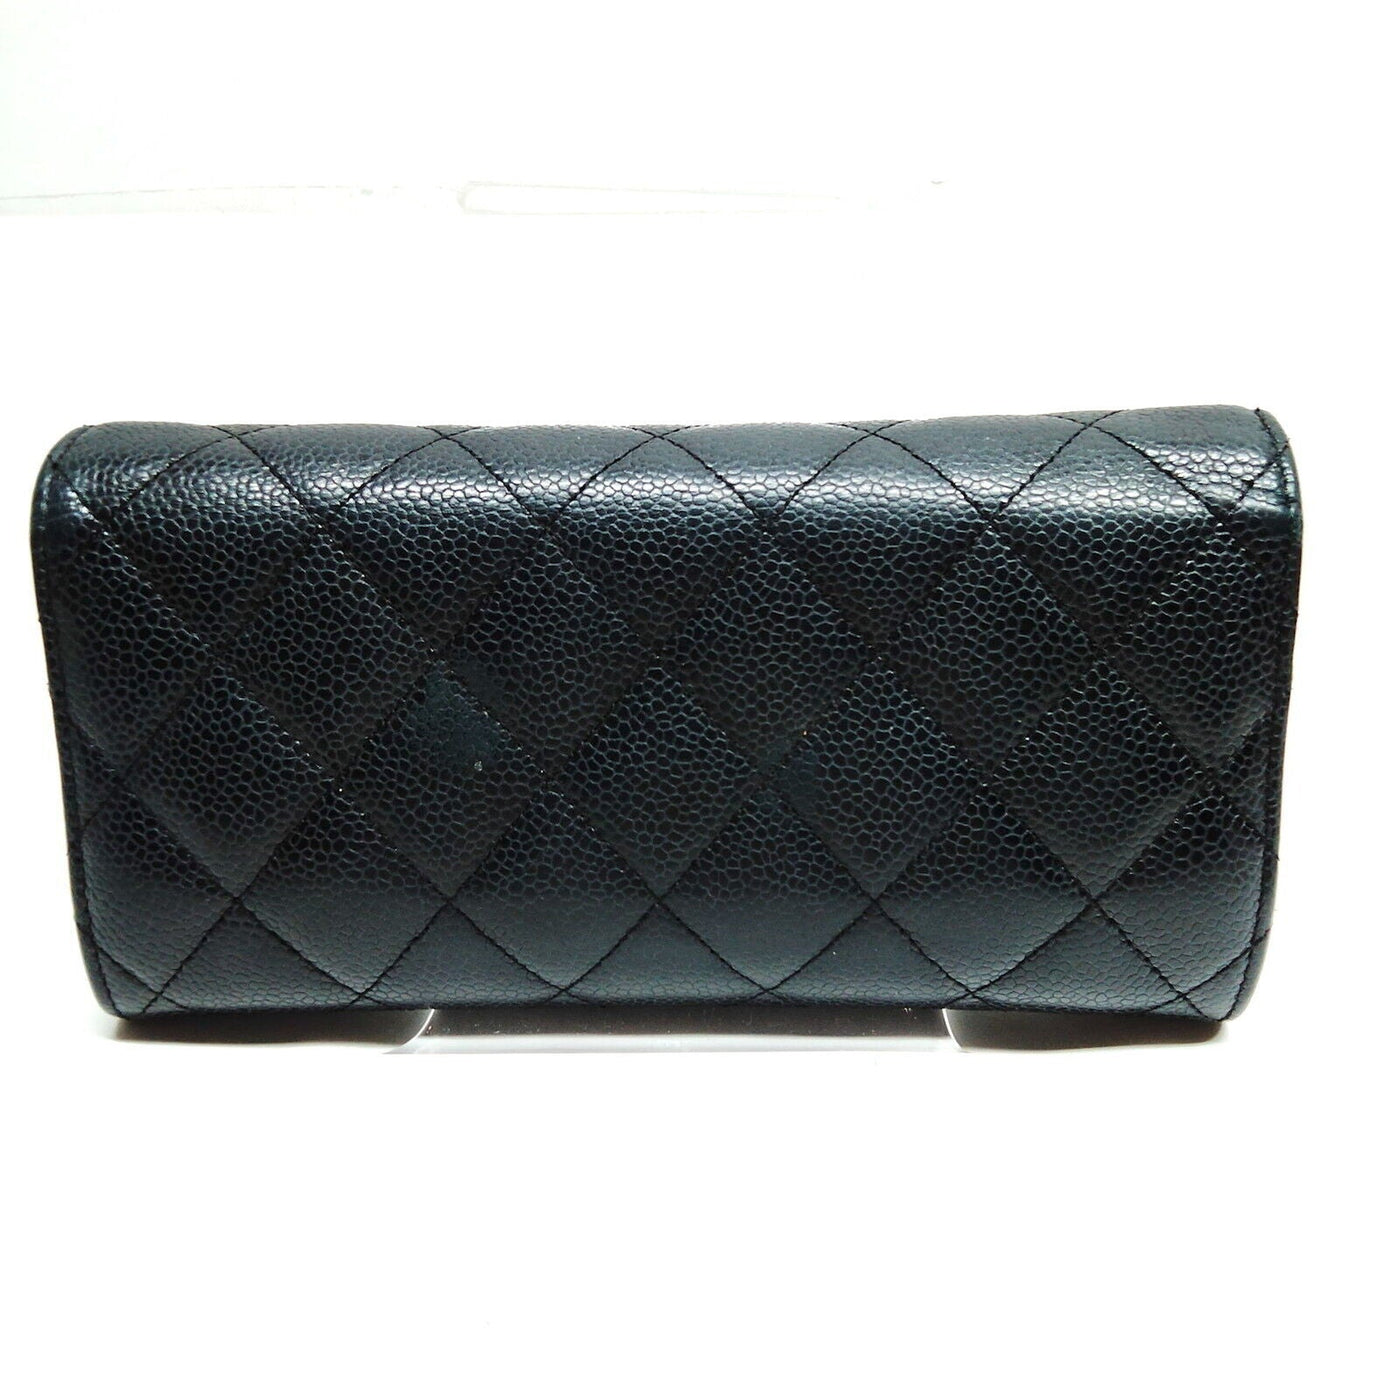 Chanel Long Wallet Black Caviar Skin - Luxury Cheaper